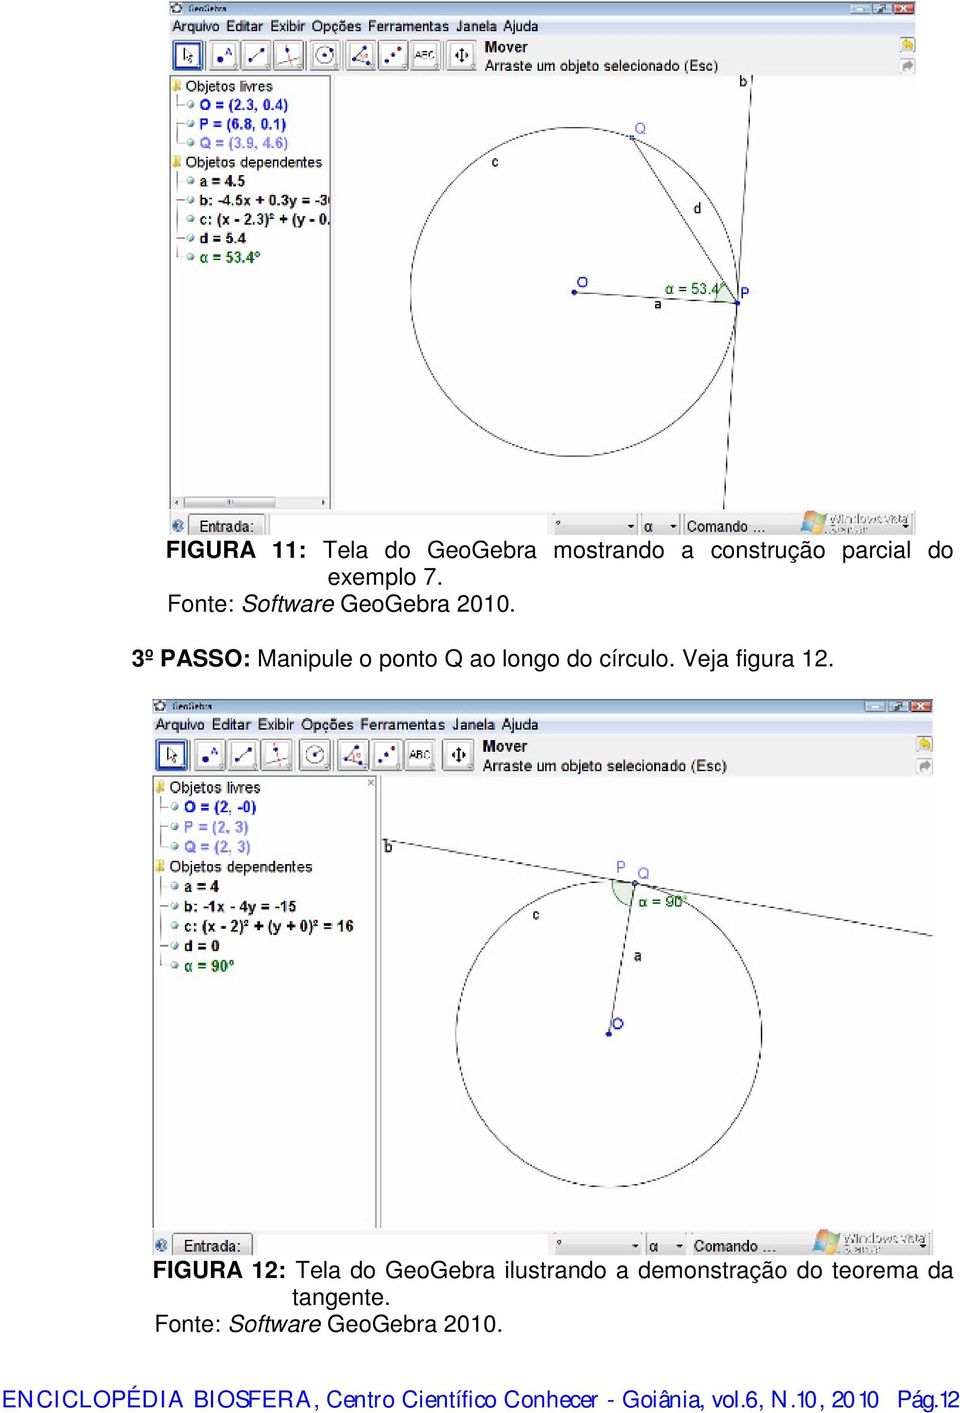 FIGURA 12: Tela do GeoGebra ilustrando a demonstração do teorema da